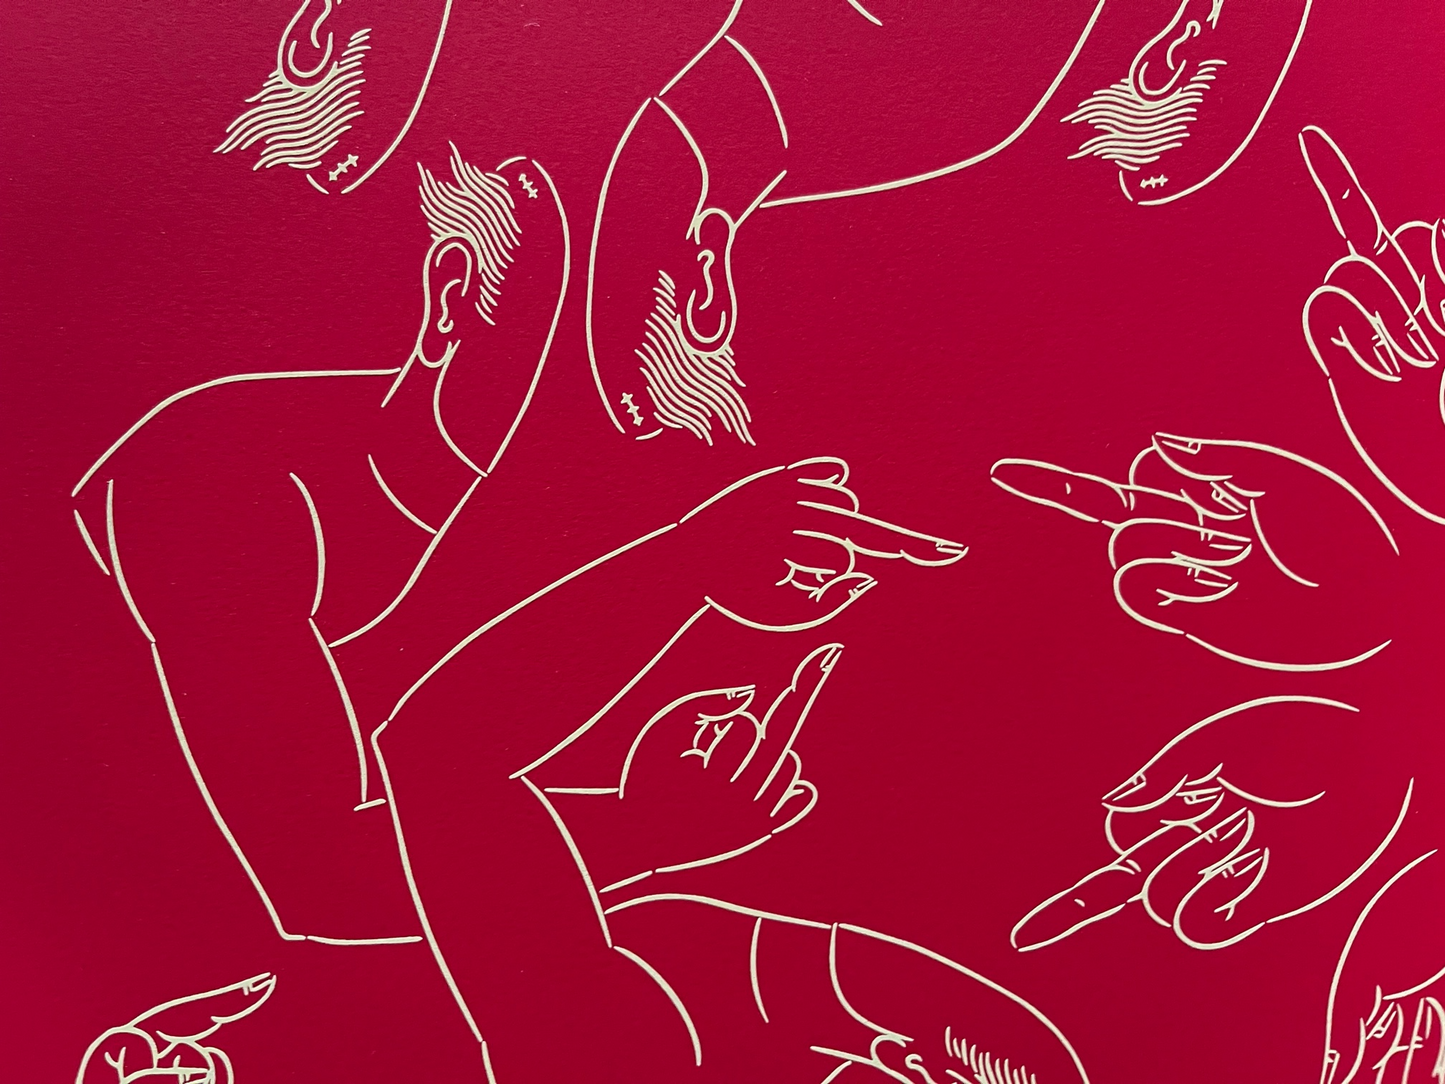 Ai Wei Wei - Middle Finger Arterego Art Gallery